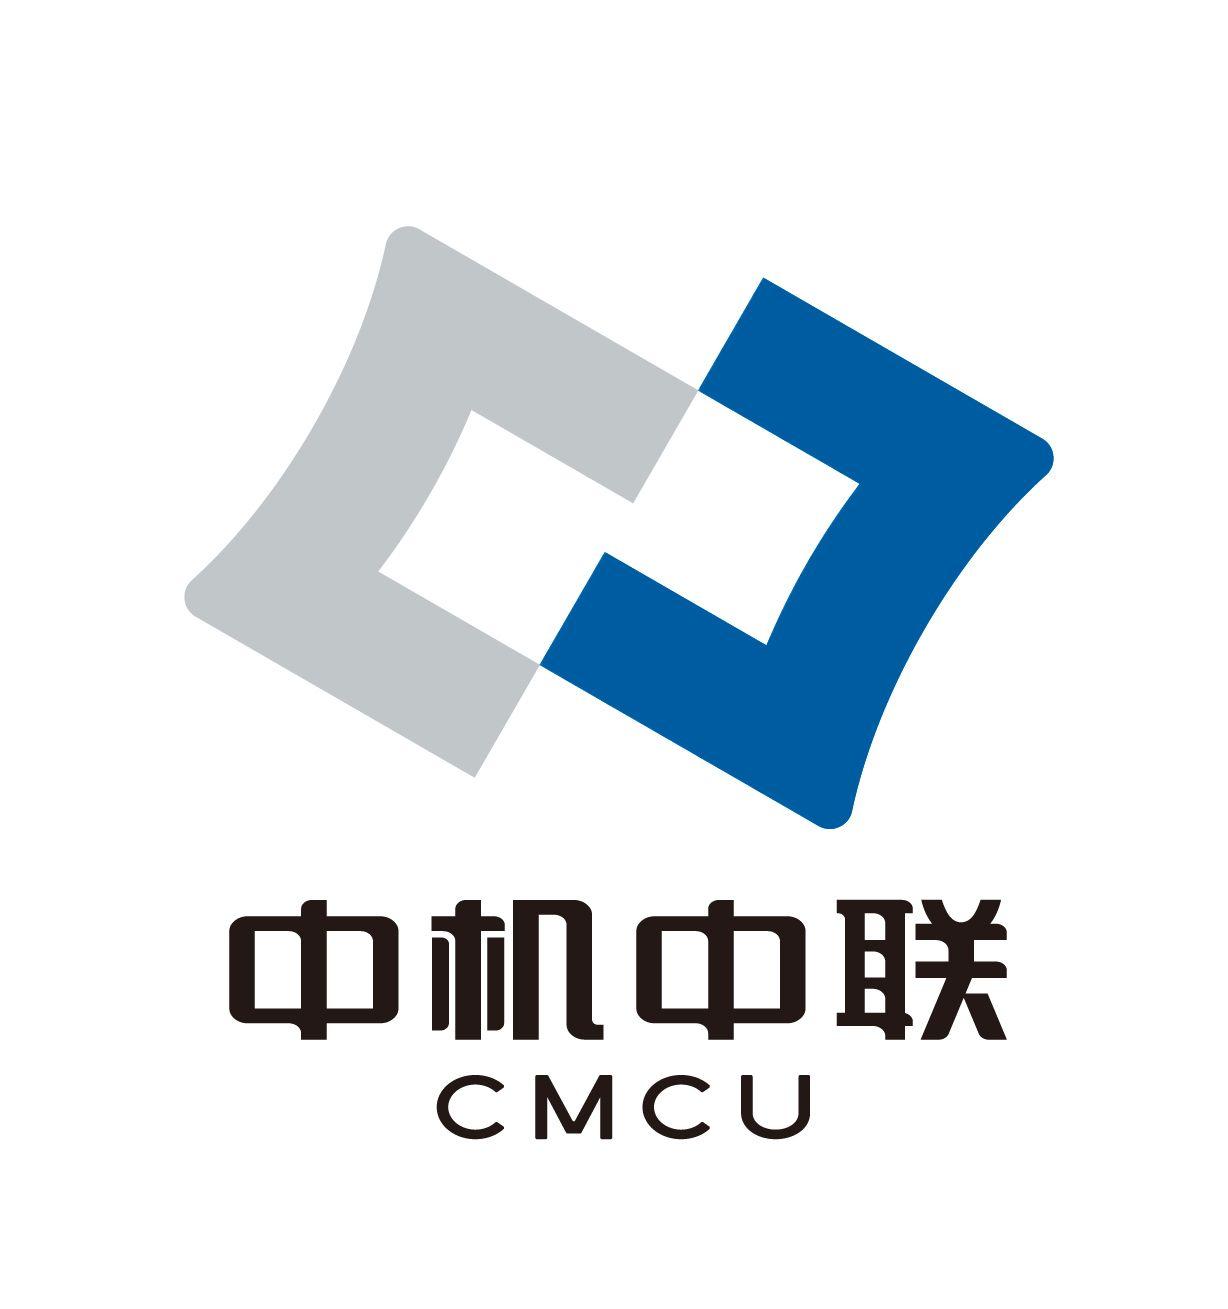 Ctdi Logo - Logo CMCU